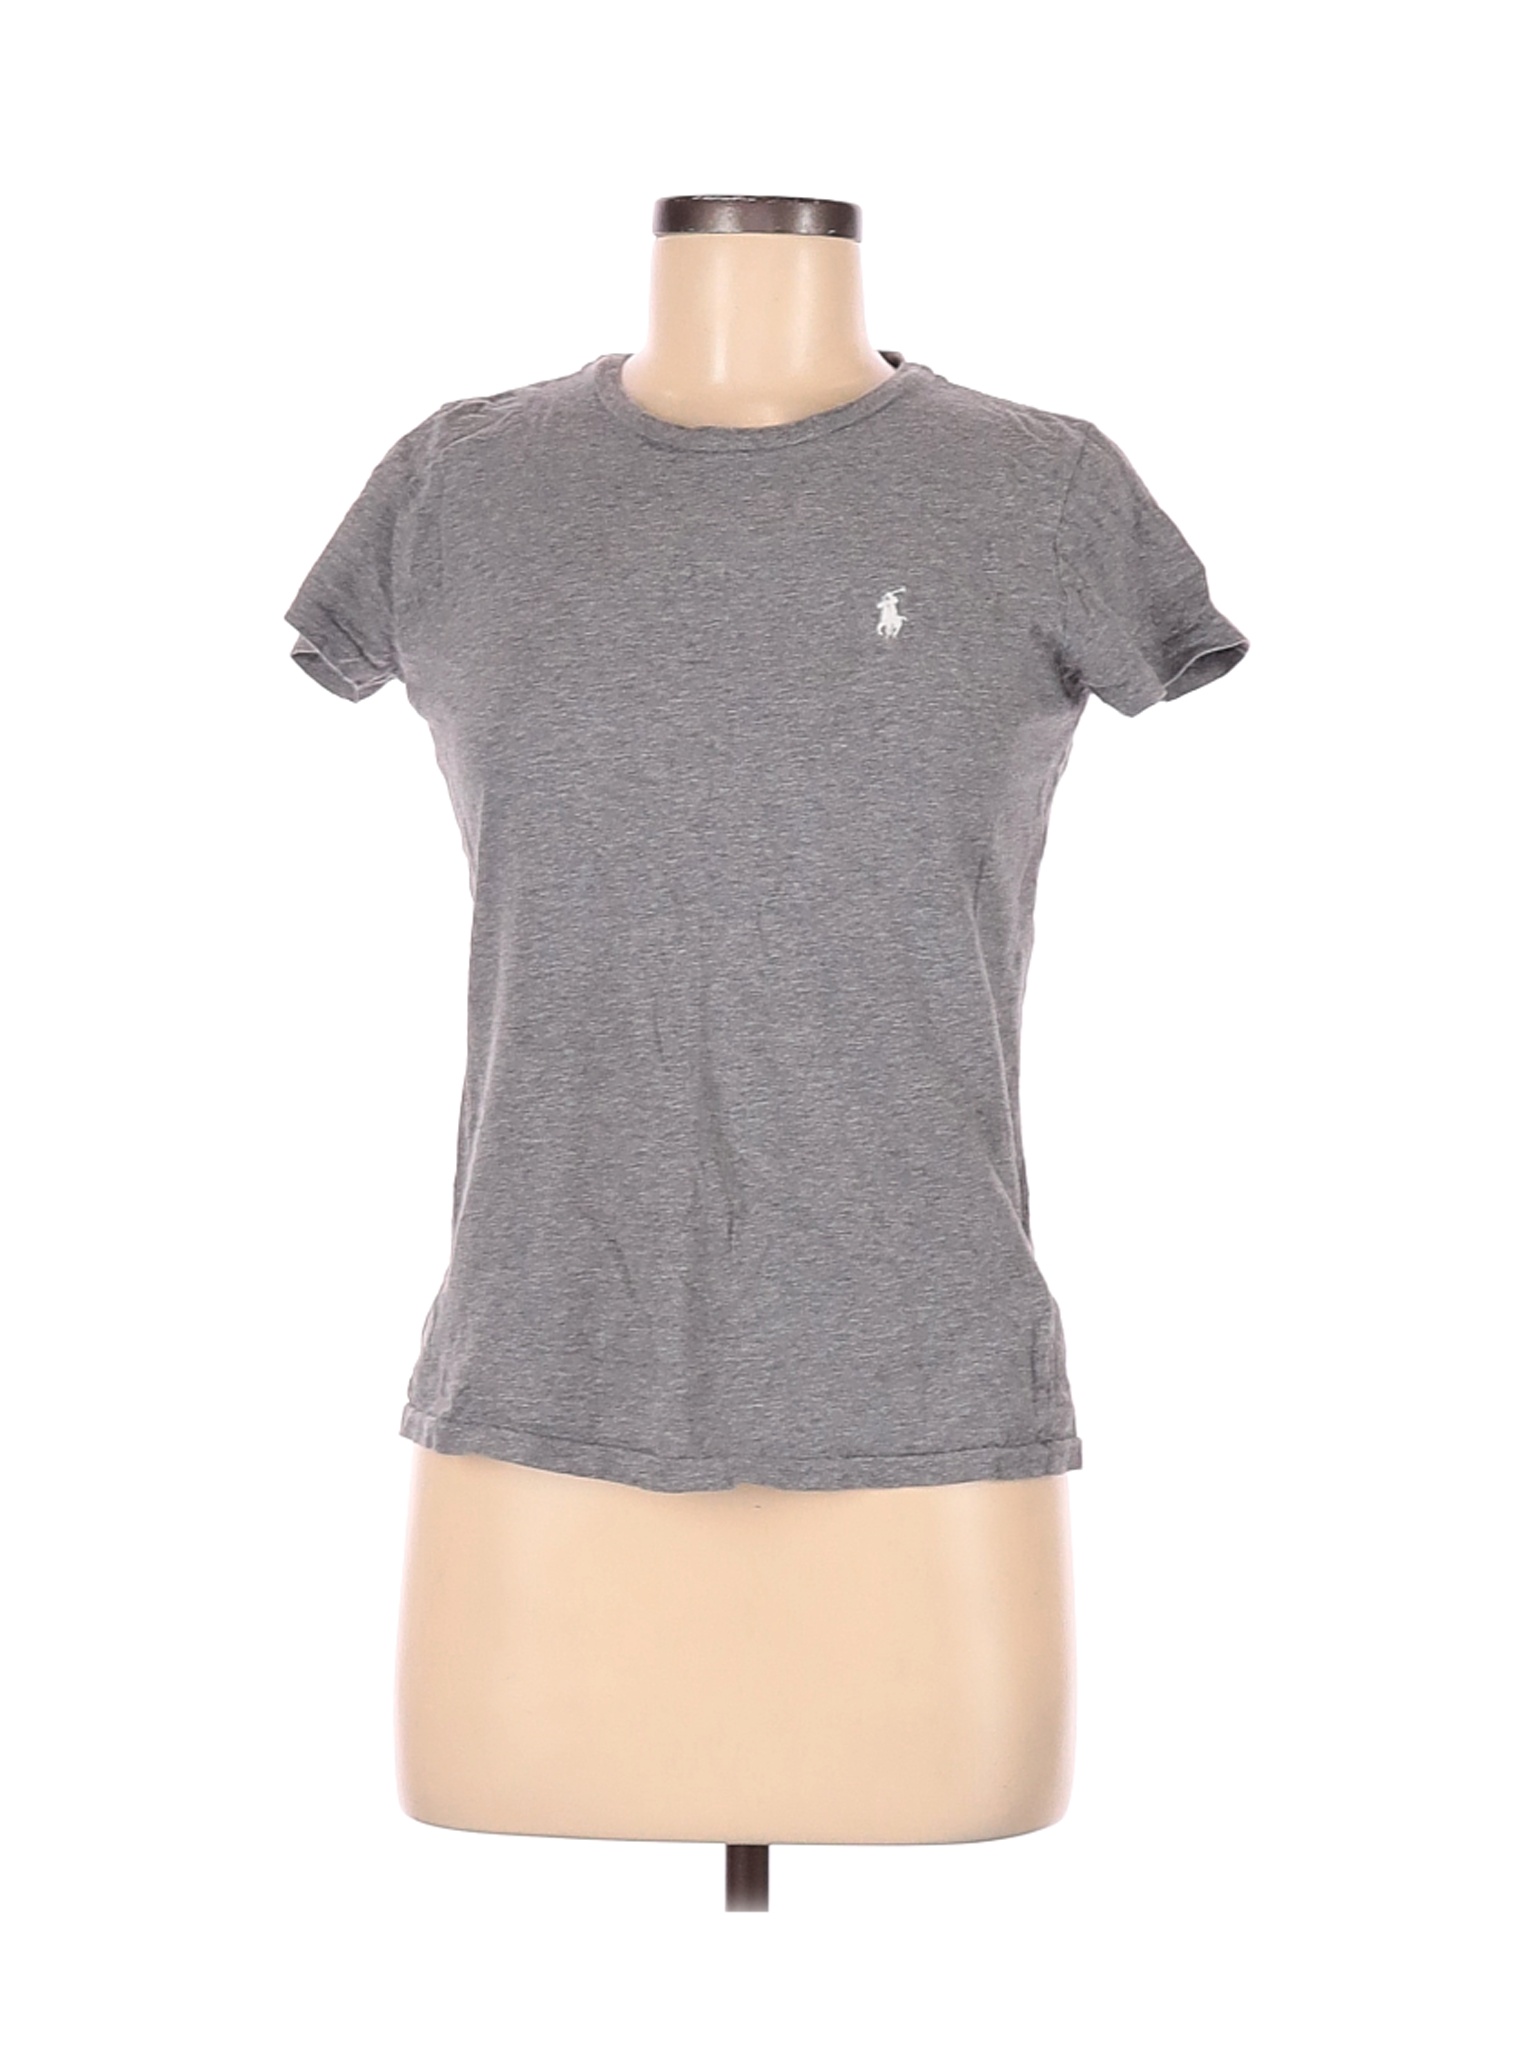 Polo by Ralph Lauren Women Gray Short Sleeve T-Shirt M | eBay